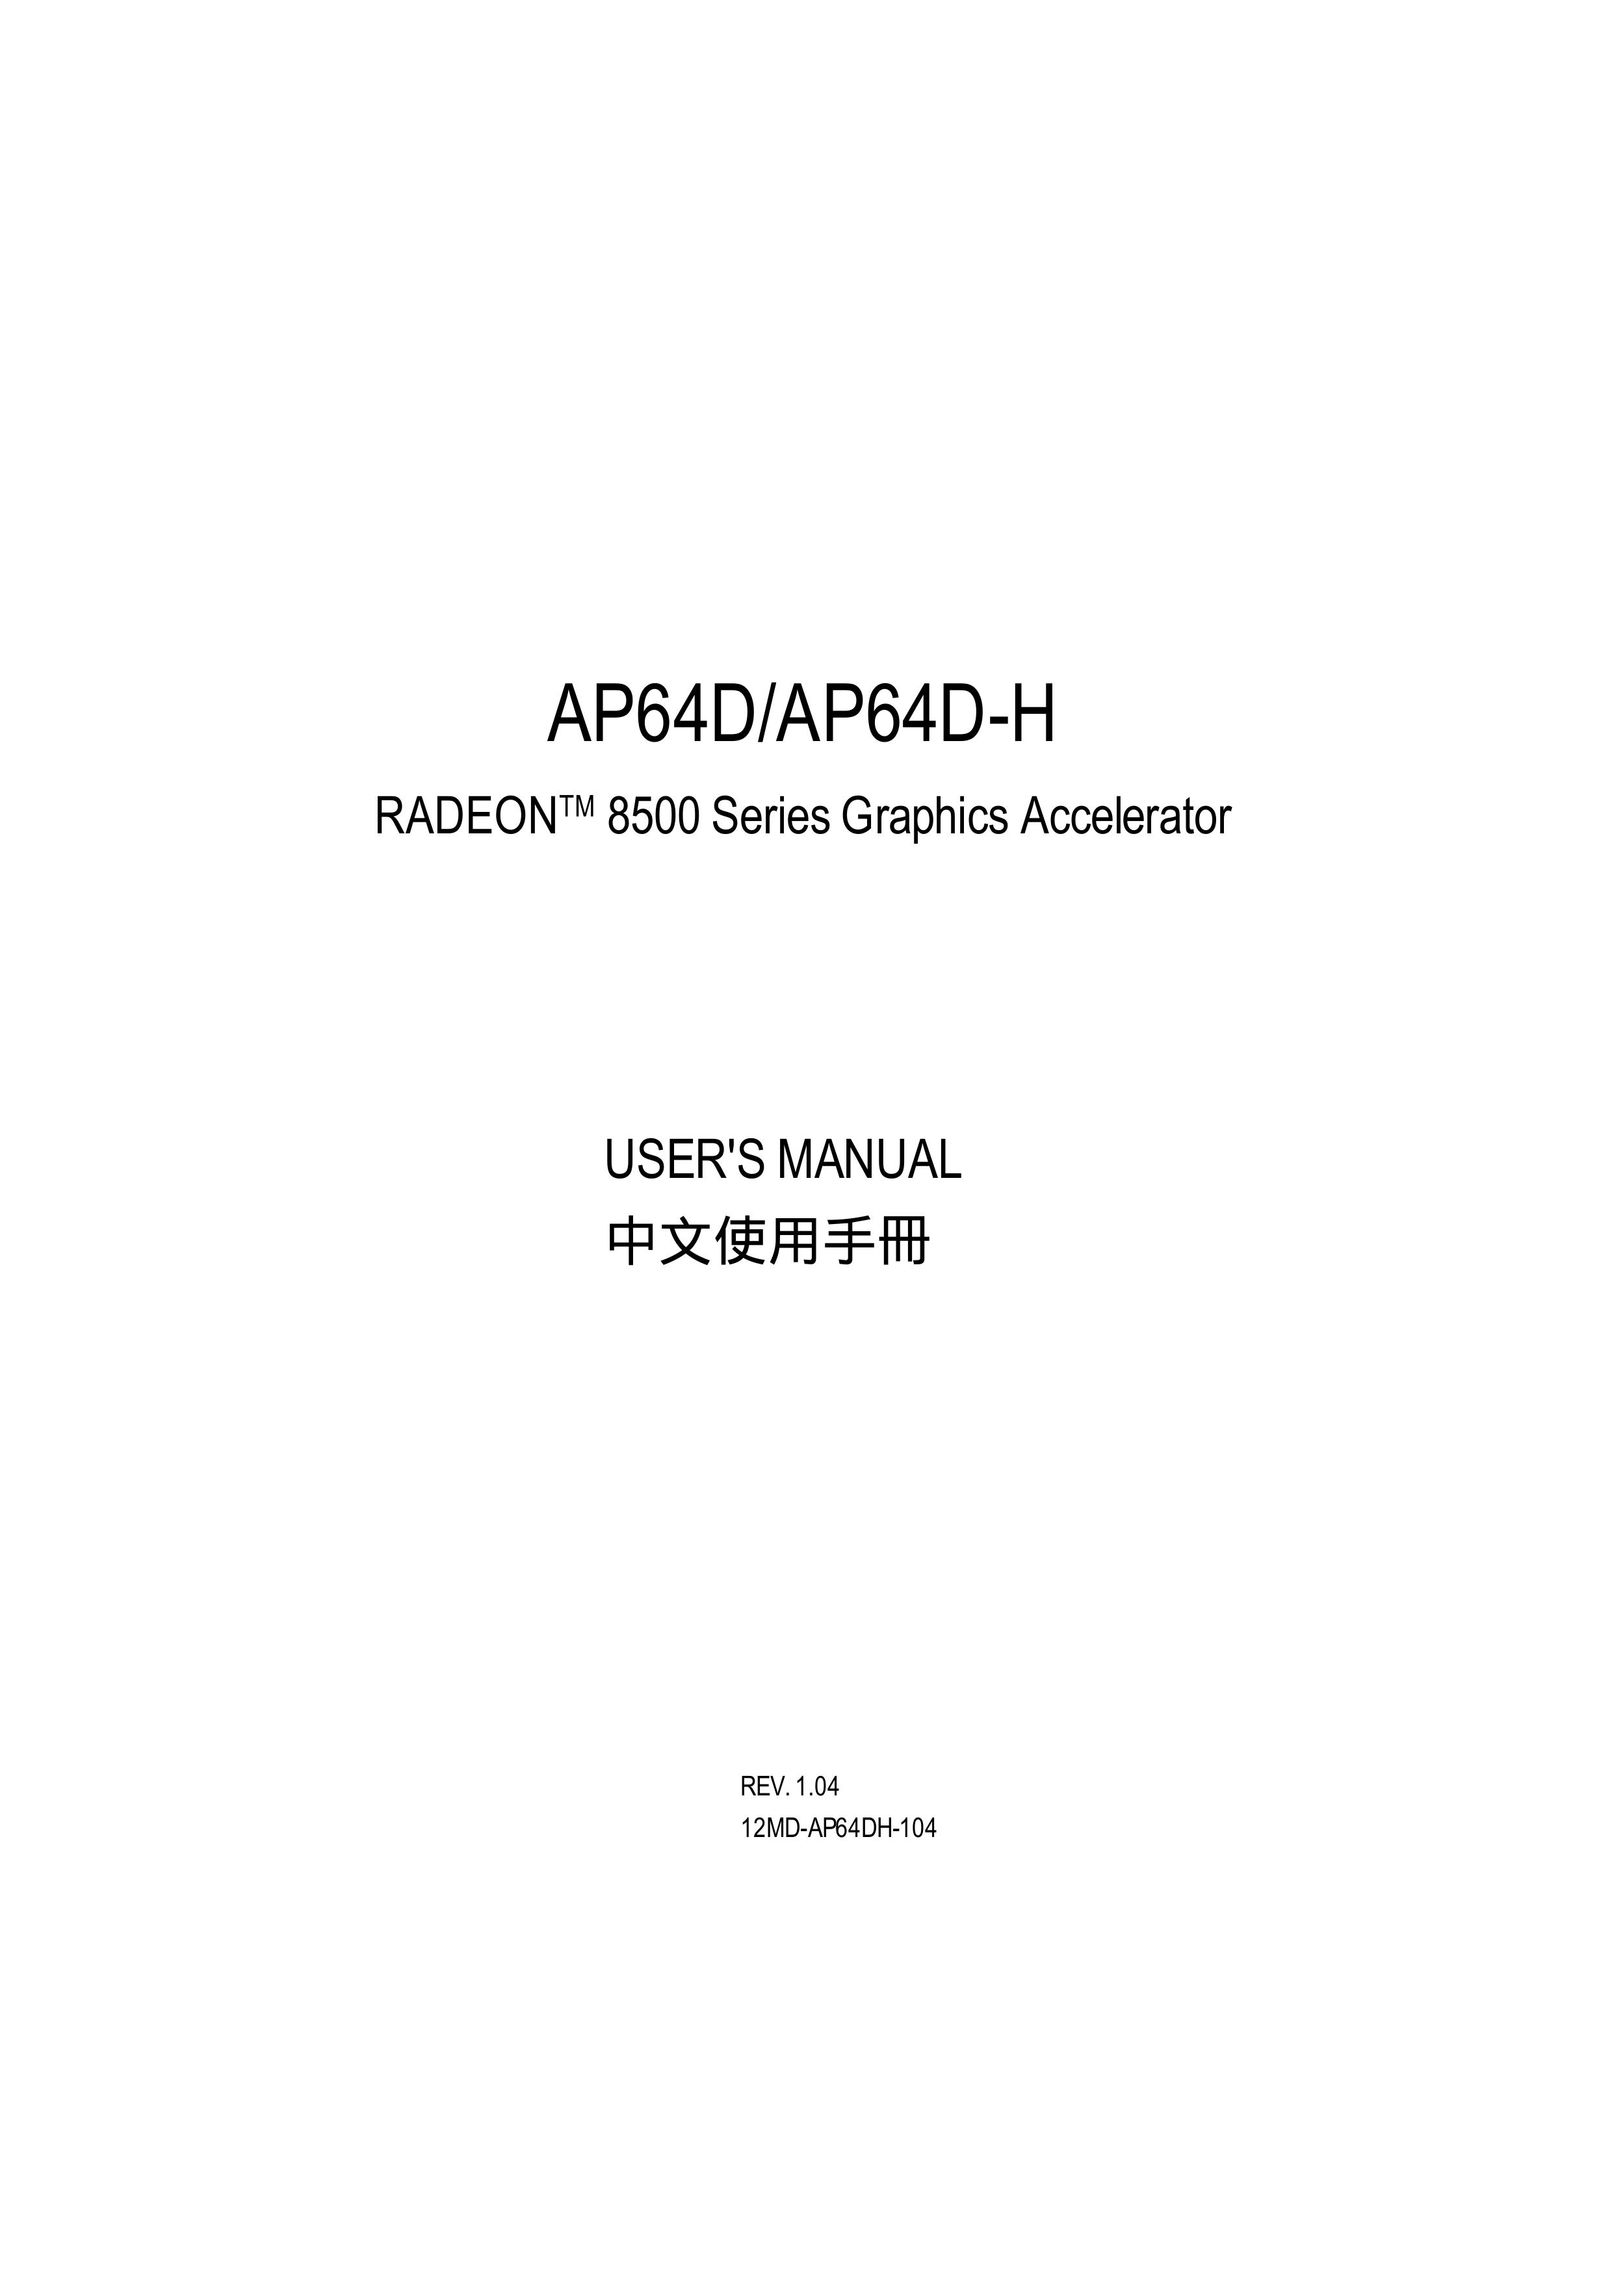 Gigabyte AP64D-H Server User Manual